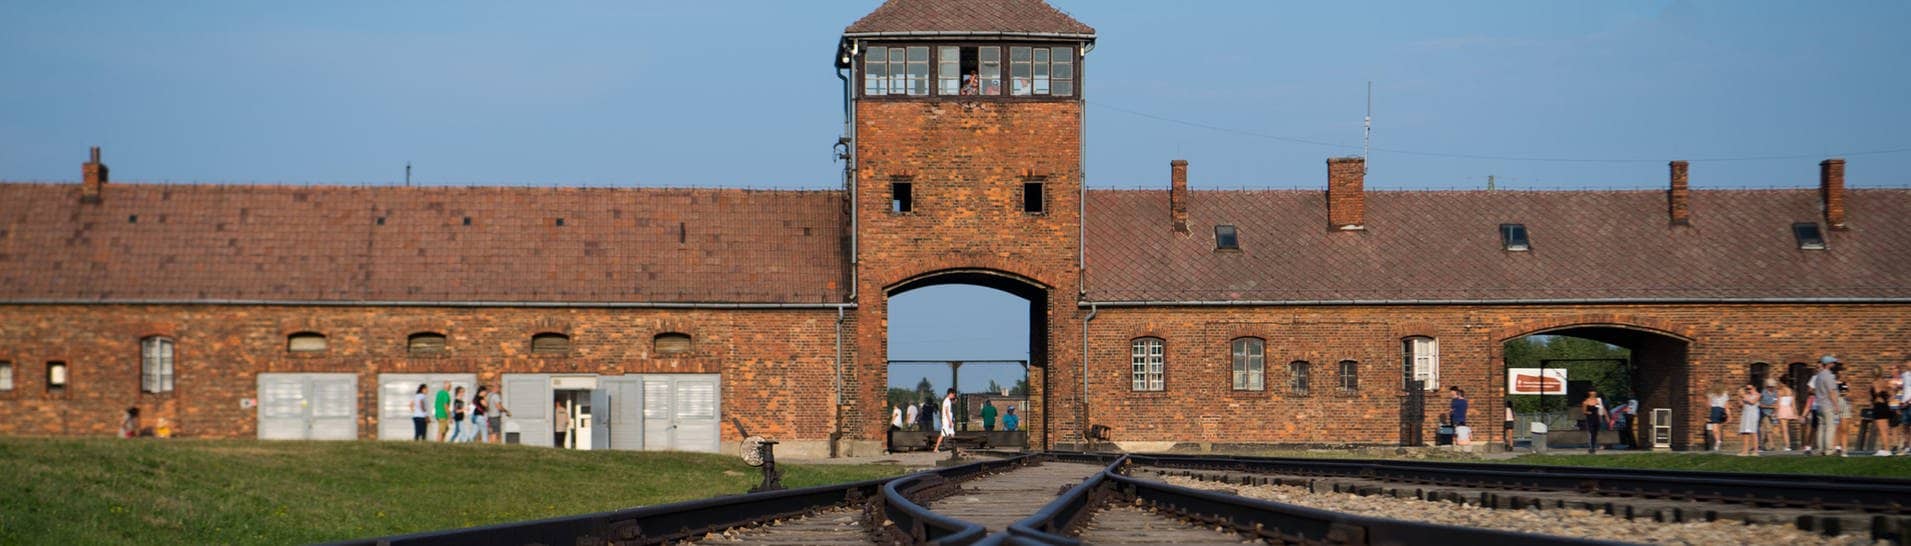 Besucher gehen vor dem historischen Tor (Innenseite) durch das frühere Vernichtungsslager Auschwitz-Birkenau. Die Gedenkstätte kann jetzt mit einer Online-Live-Führung besucht werden.